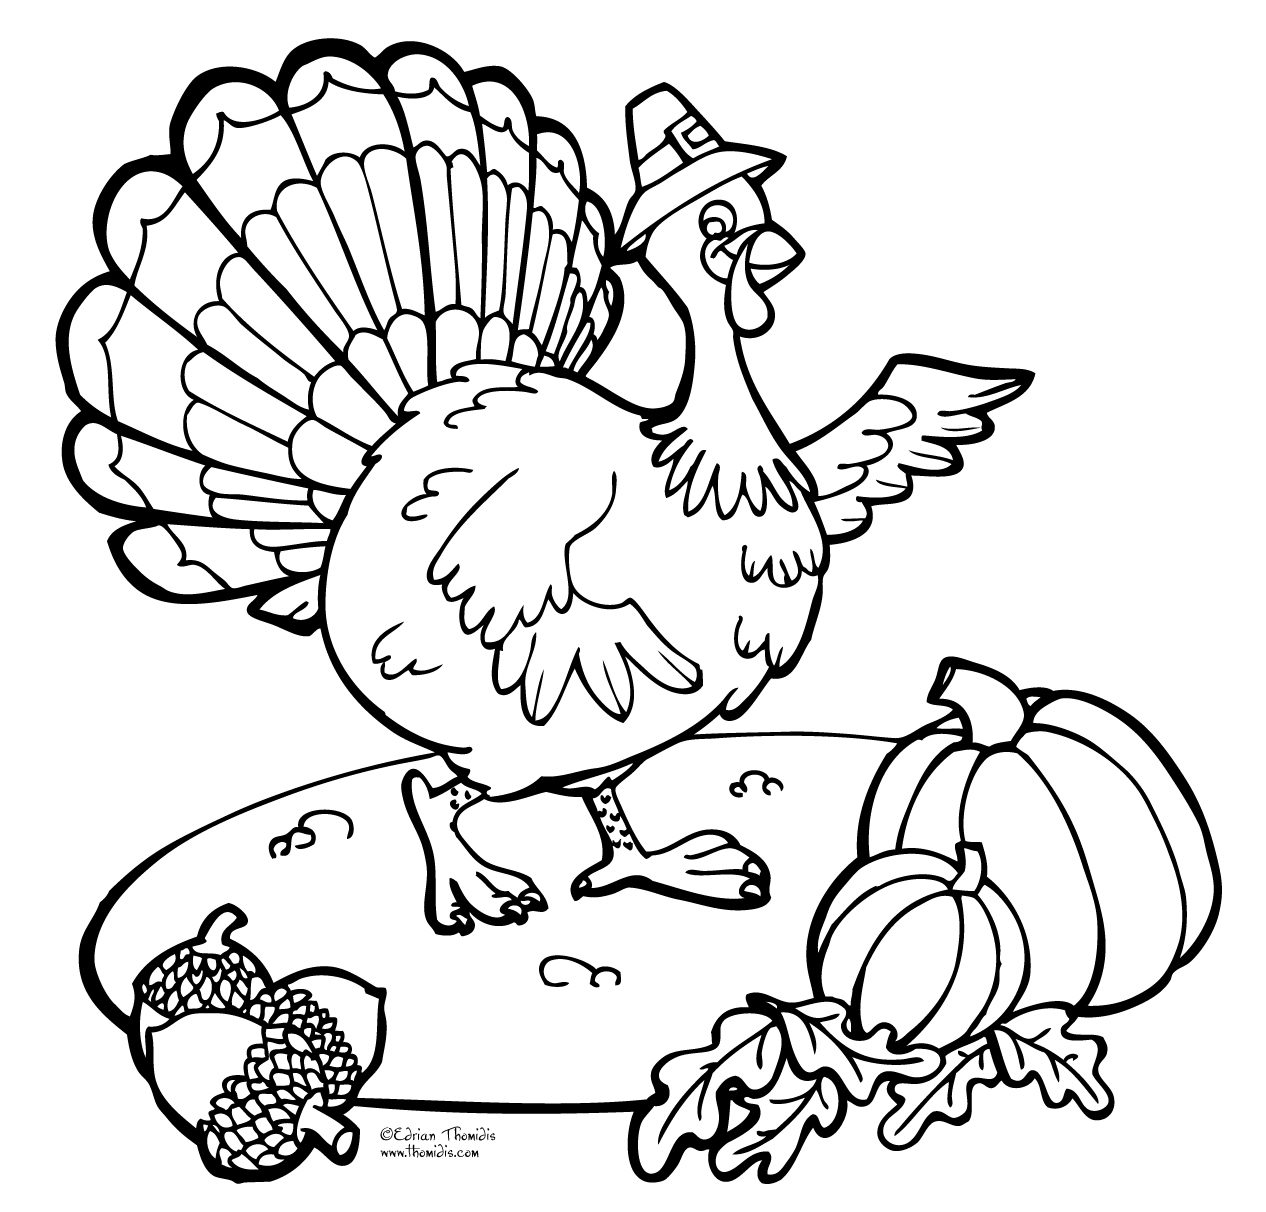 Printable thanksgiving-turkey-coloring-page - Coloringpagebook.com